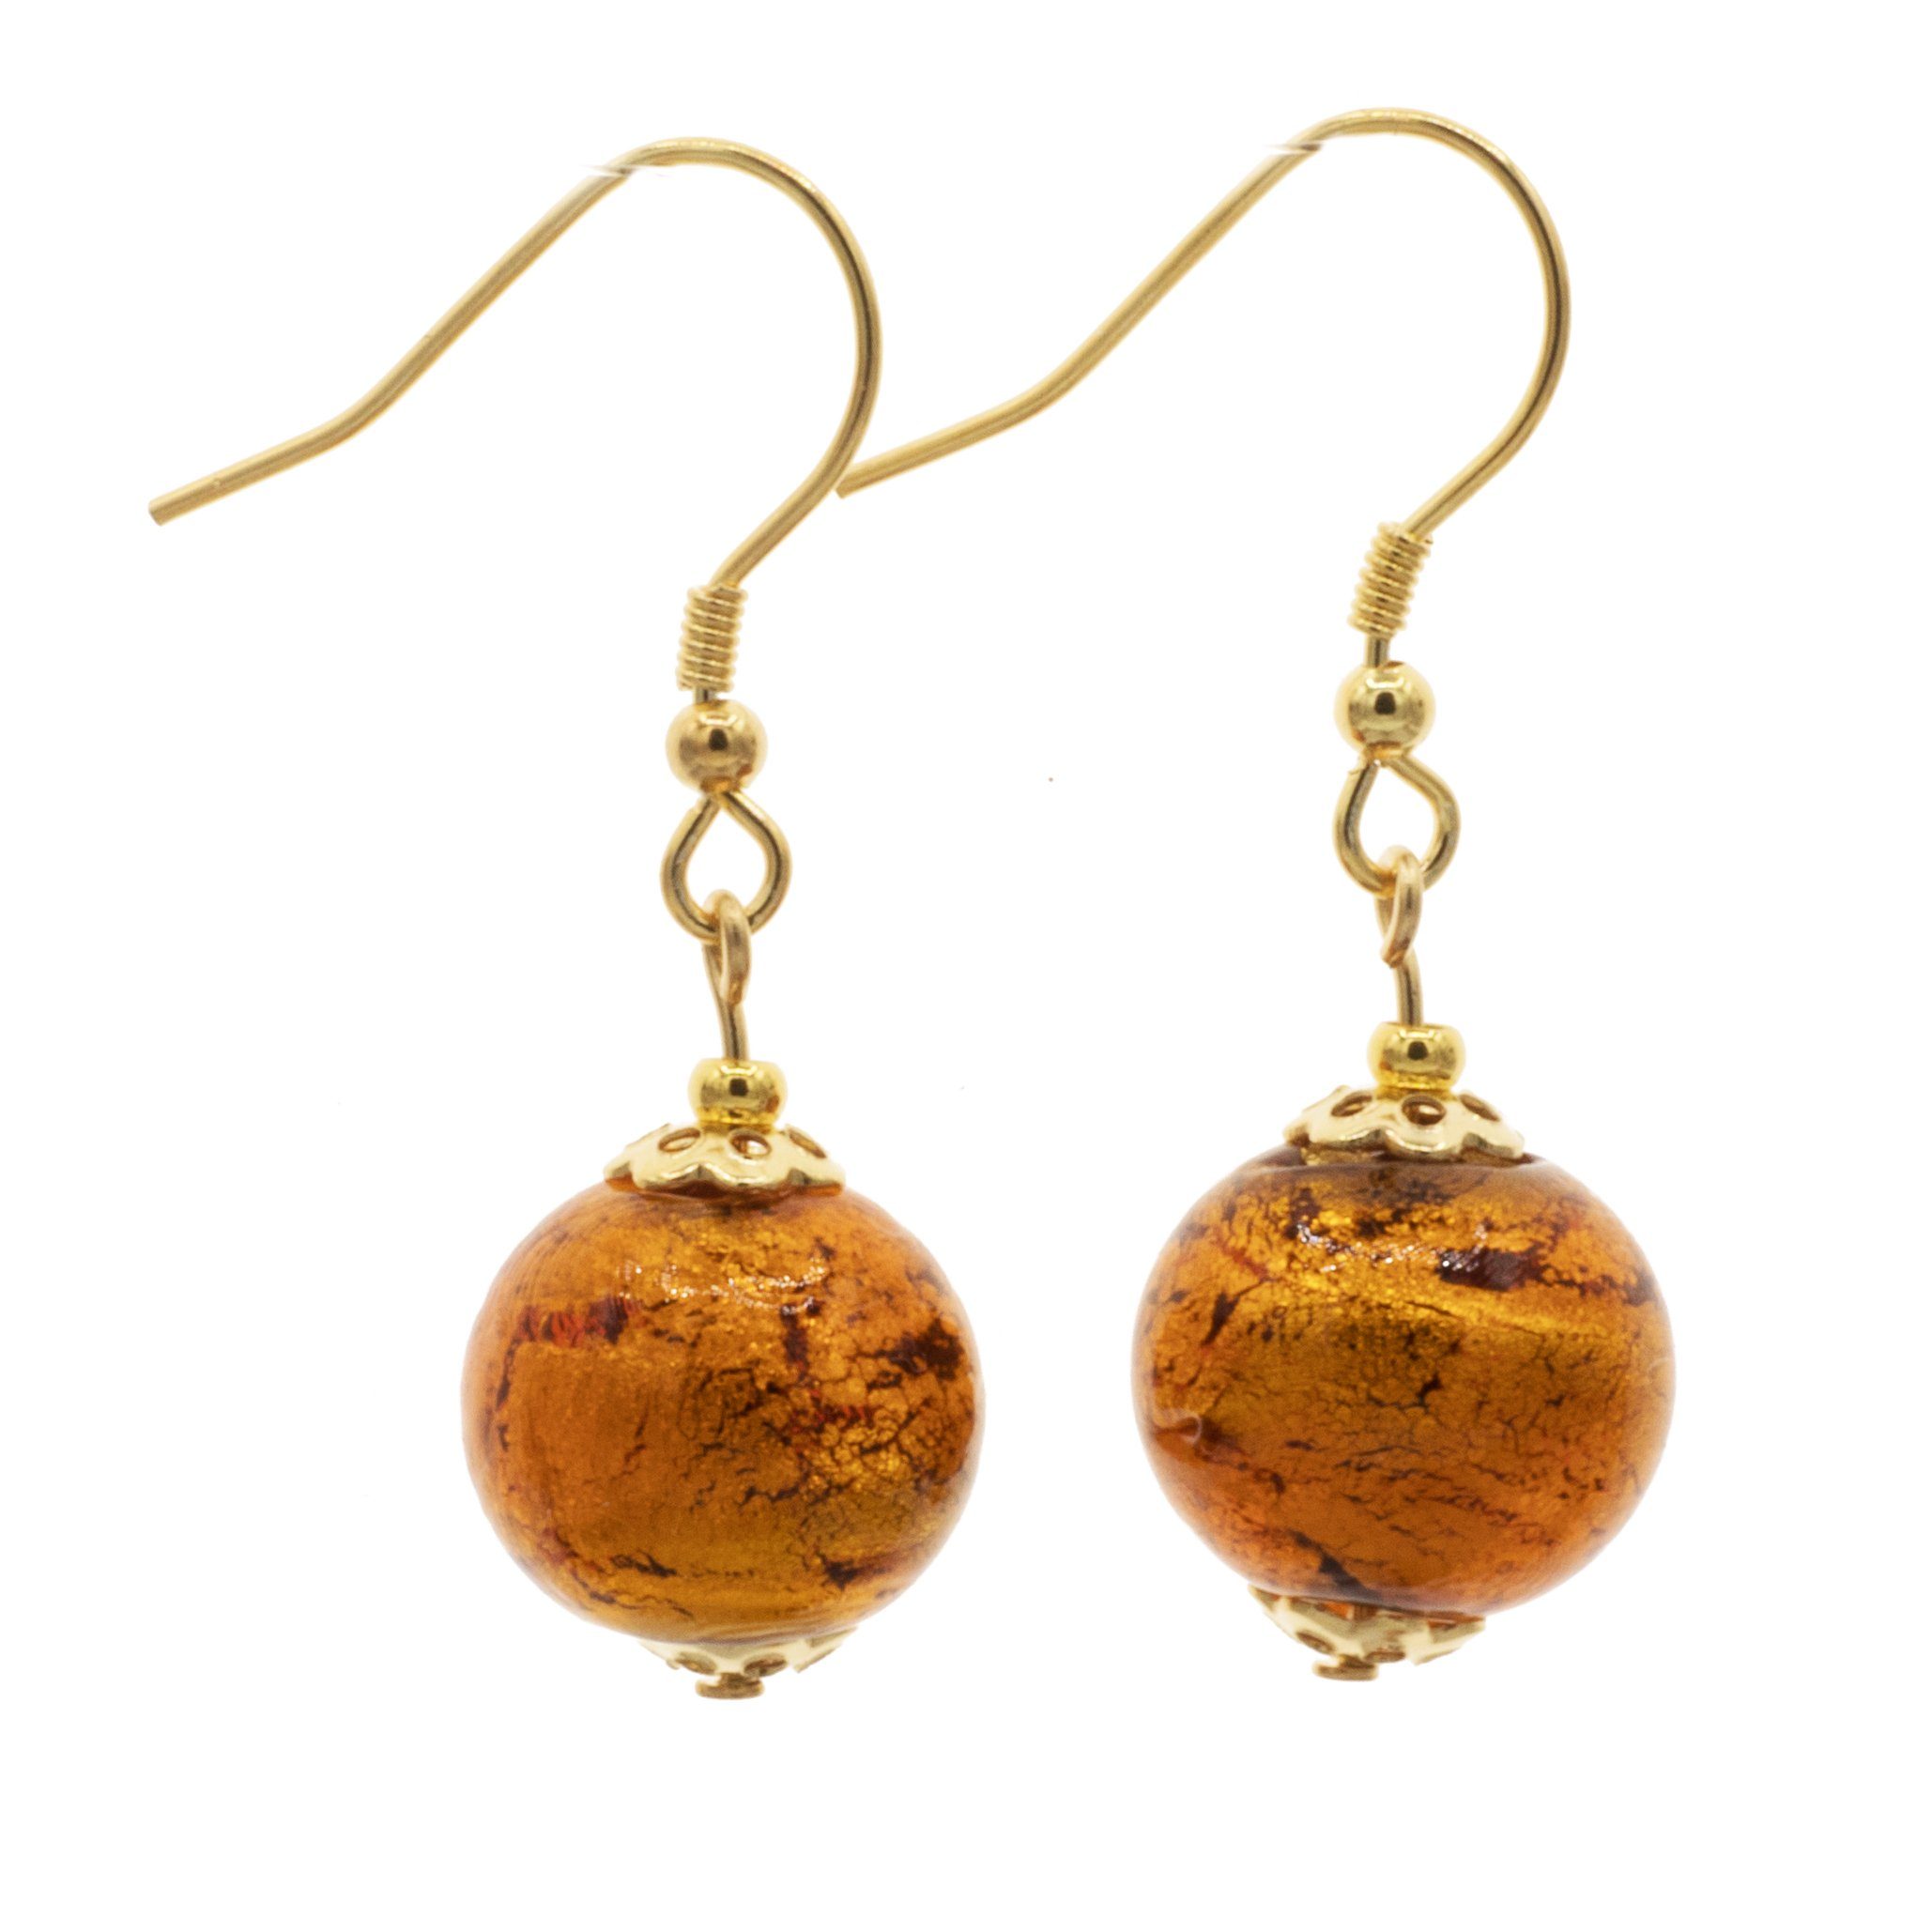 Bella Carina Paar Ohrhänger Ohrringe mit Murano Glas Perlen gold braun, 925  Silber vergoldet, echte Murano Glas Perlen